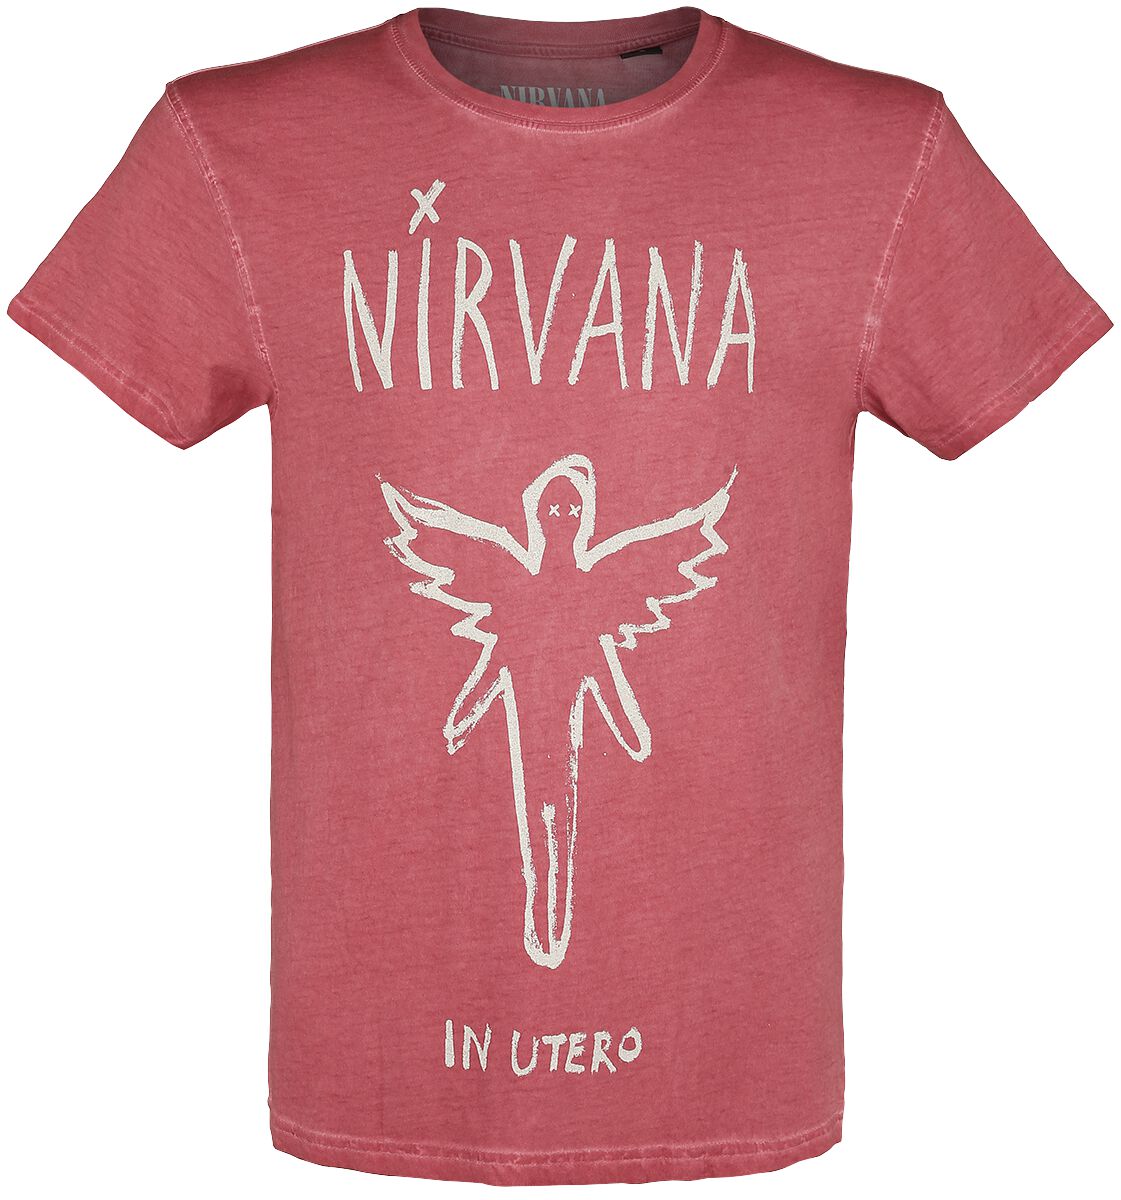 Nirvana T-Shirt - In Utero - S bis XXL - für Männer - Größe L - rot  - Lizenziertes Merchandise!